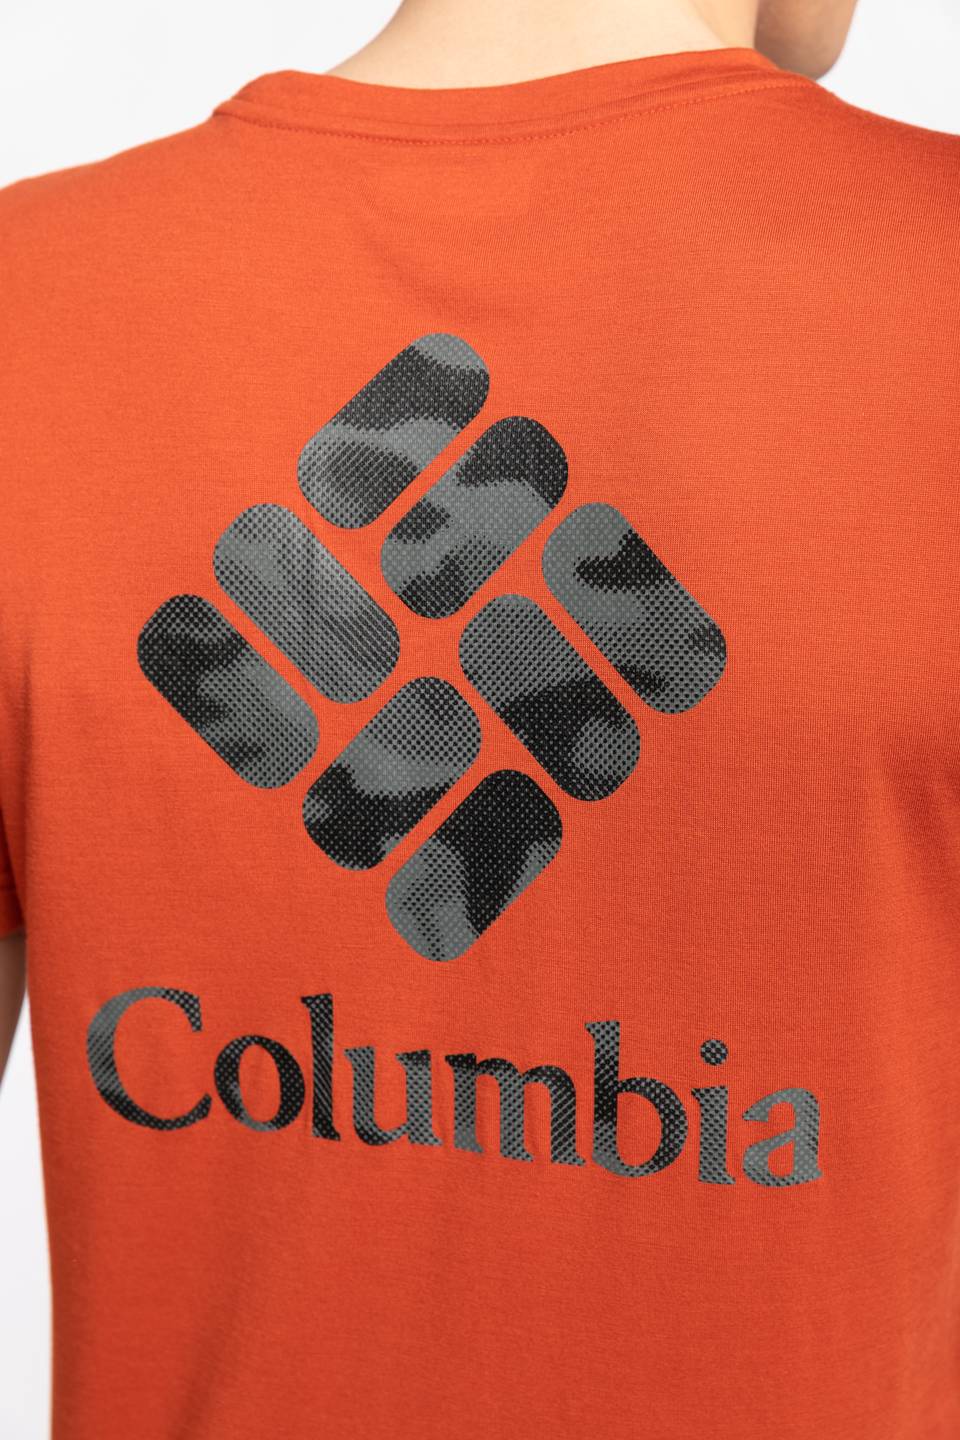 Koszulka Columbia Z KRÓTKIM RĘKAWEM 1883433-248